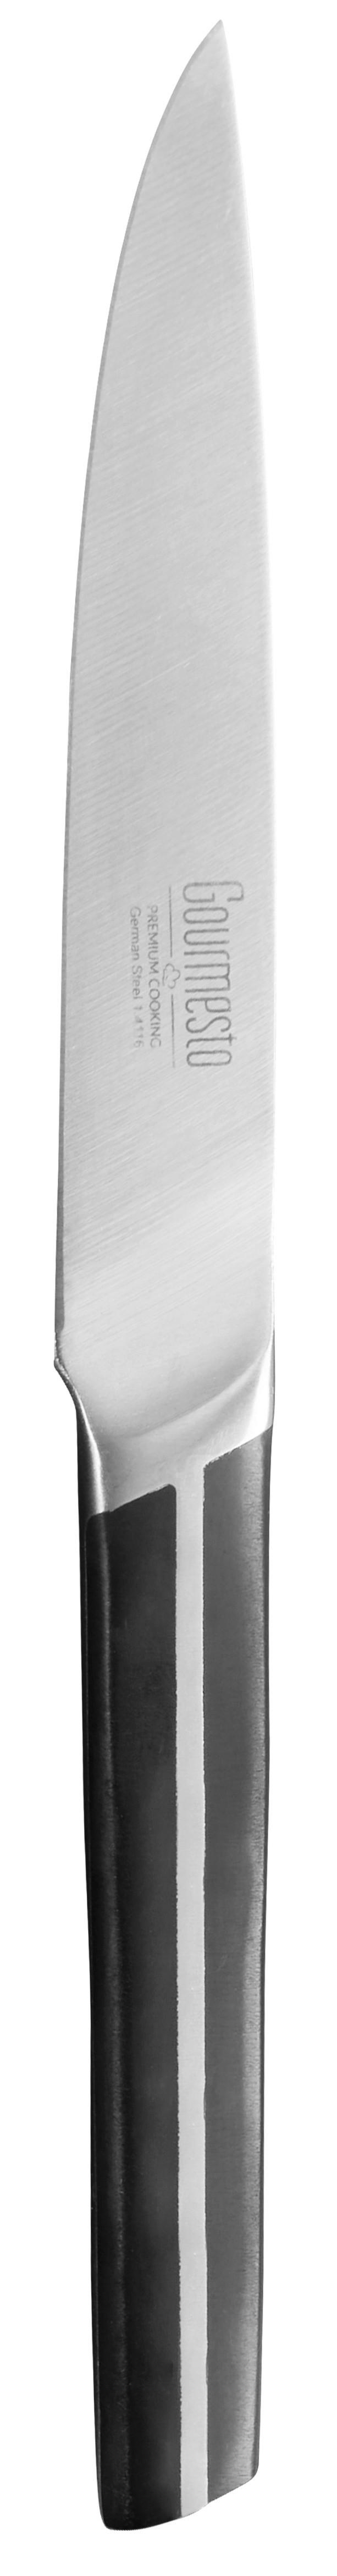 Allzweckmesser Profi Line ca. 24,8cm - Edelstahlfarben/Schwarz, KONVENTIONELL, Kunststoff/Metall (24,8cm) - Gourmesto